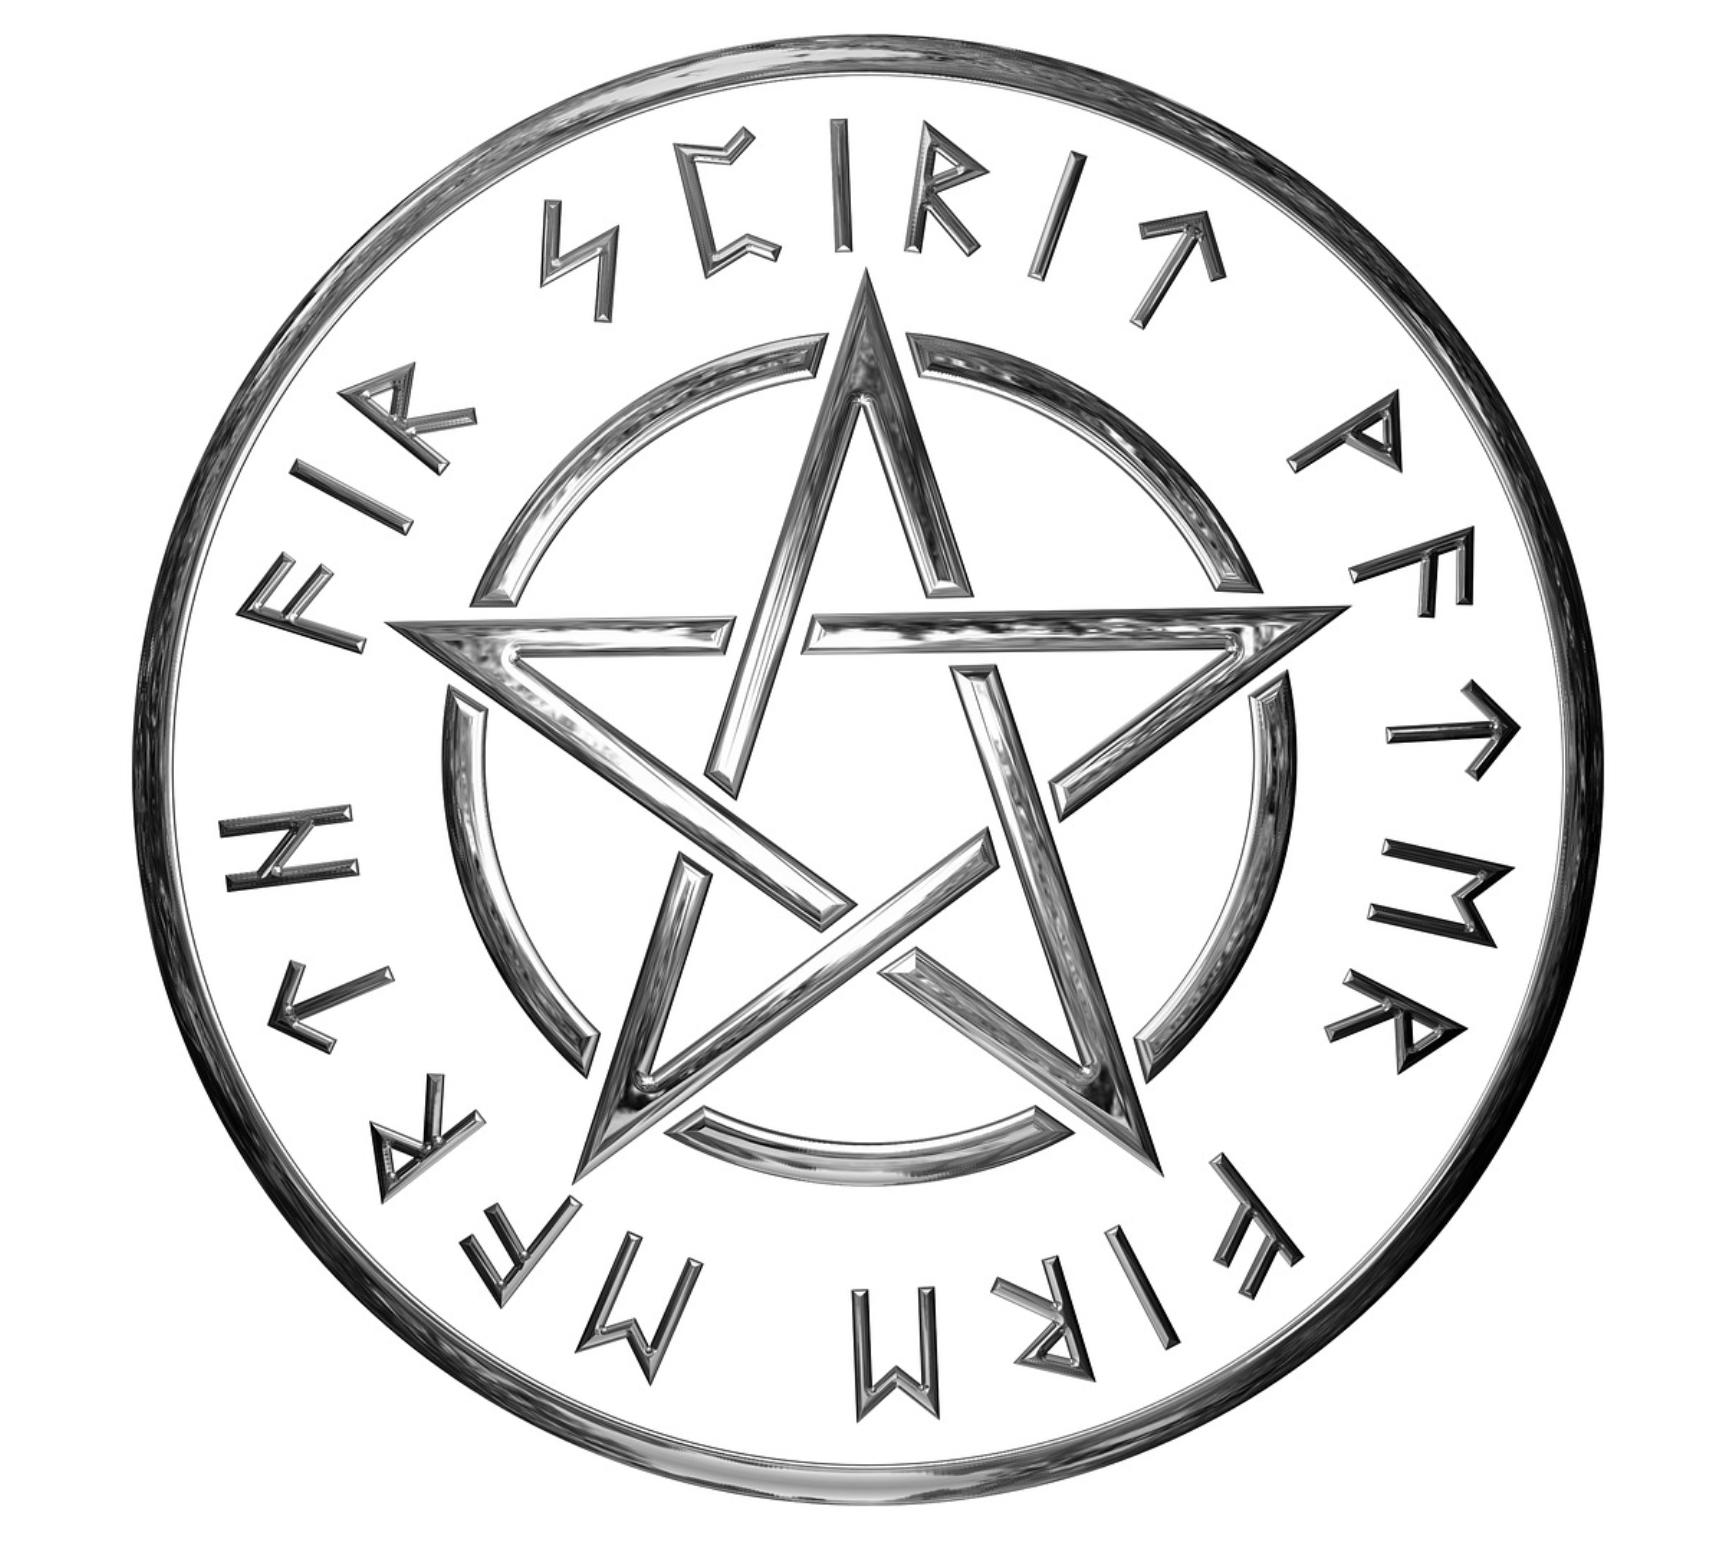 Occult pentagram